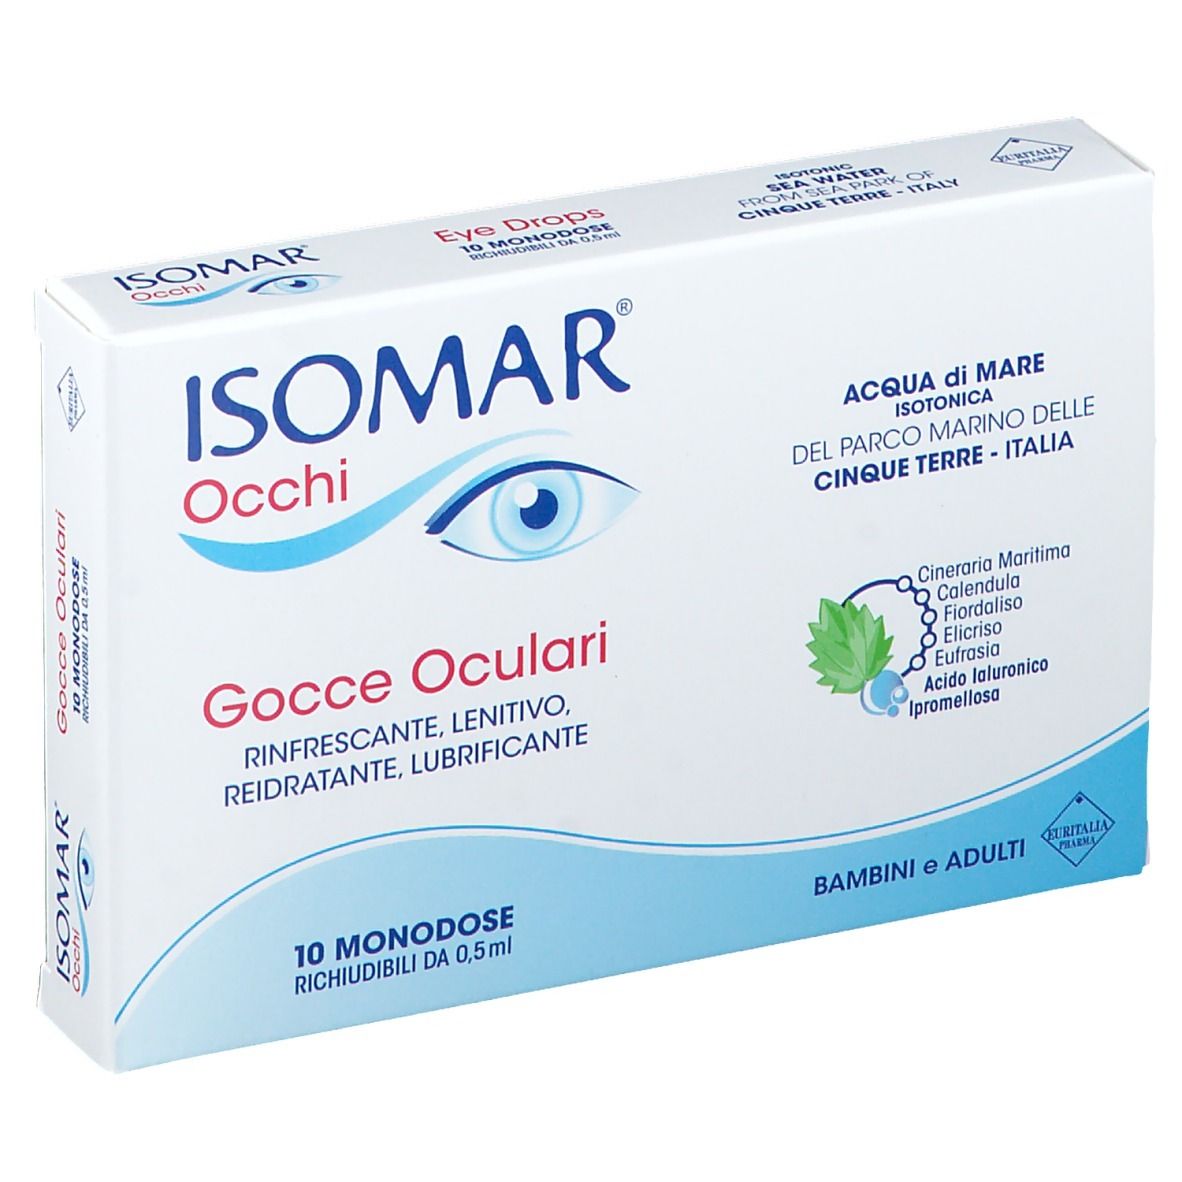 Isomar® Occhi Gocce Oculari